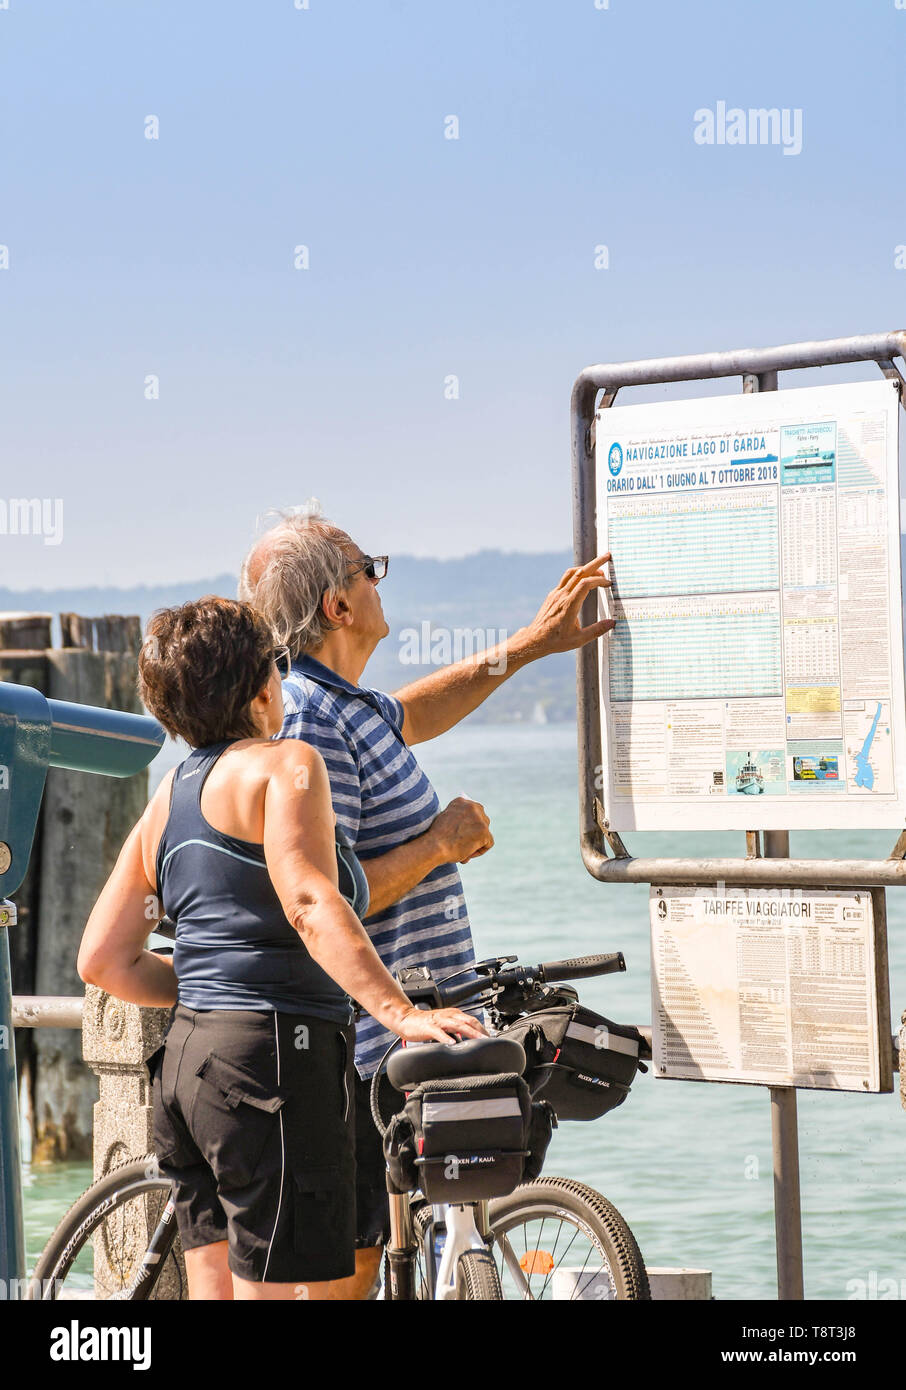 SIRMIONE SUL LAGO DI GARDA, Italia - Settembre 2018: uomo e donna controllare l'orario traghetti al porto a Sirmione sul Lago di Garda. Foto Stock